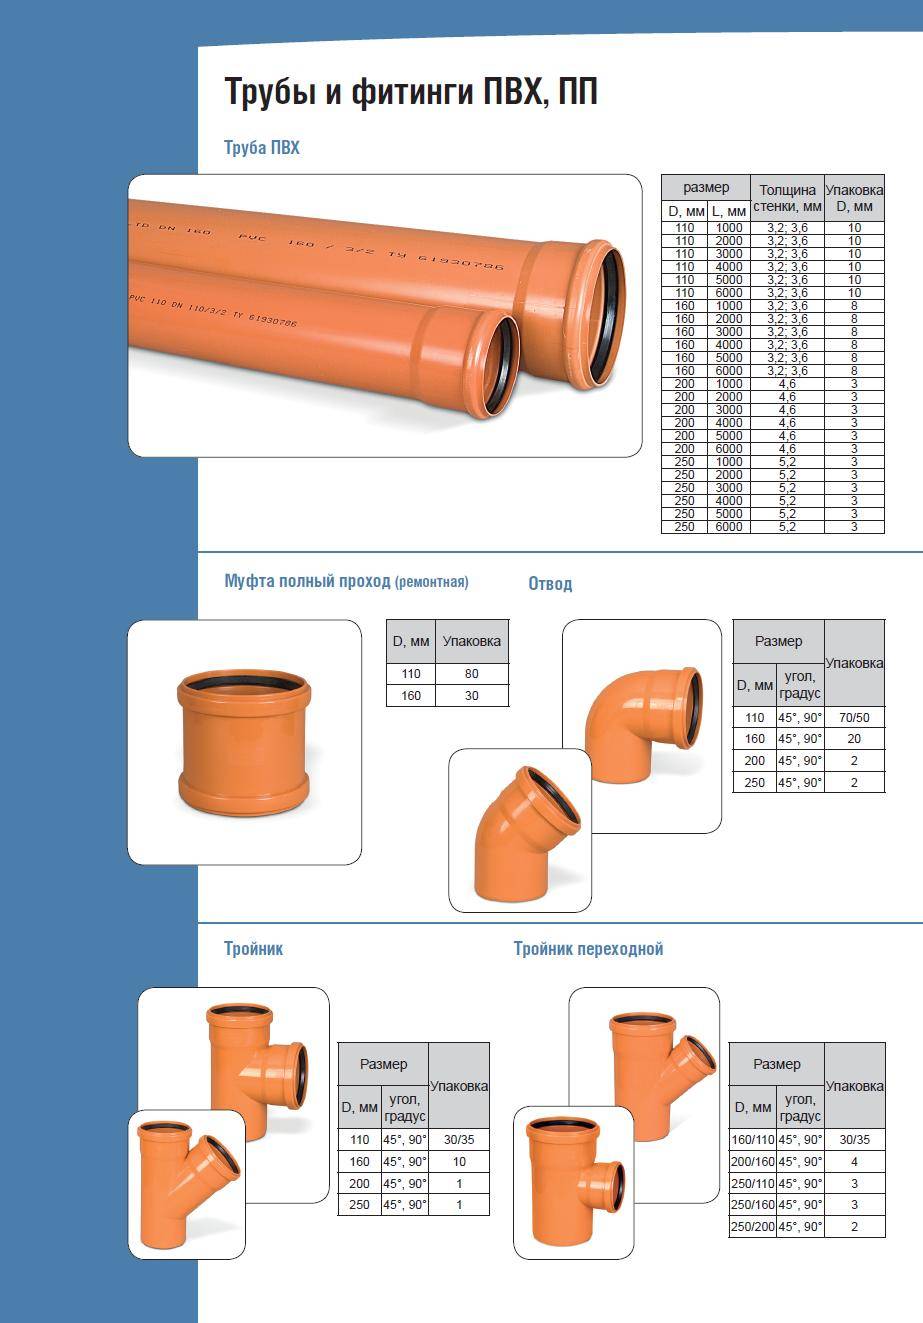 Диаметр канализационной трубы: изделия большого размера для частного дома, какие бывают варианты для канализации в квартире